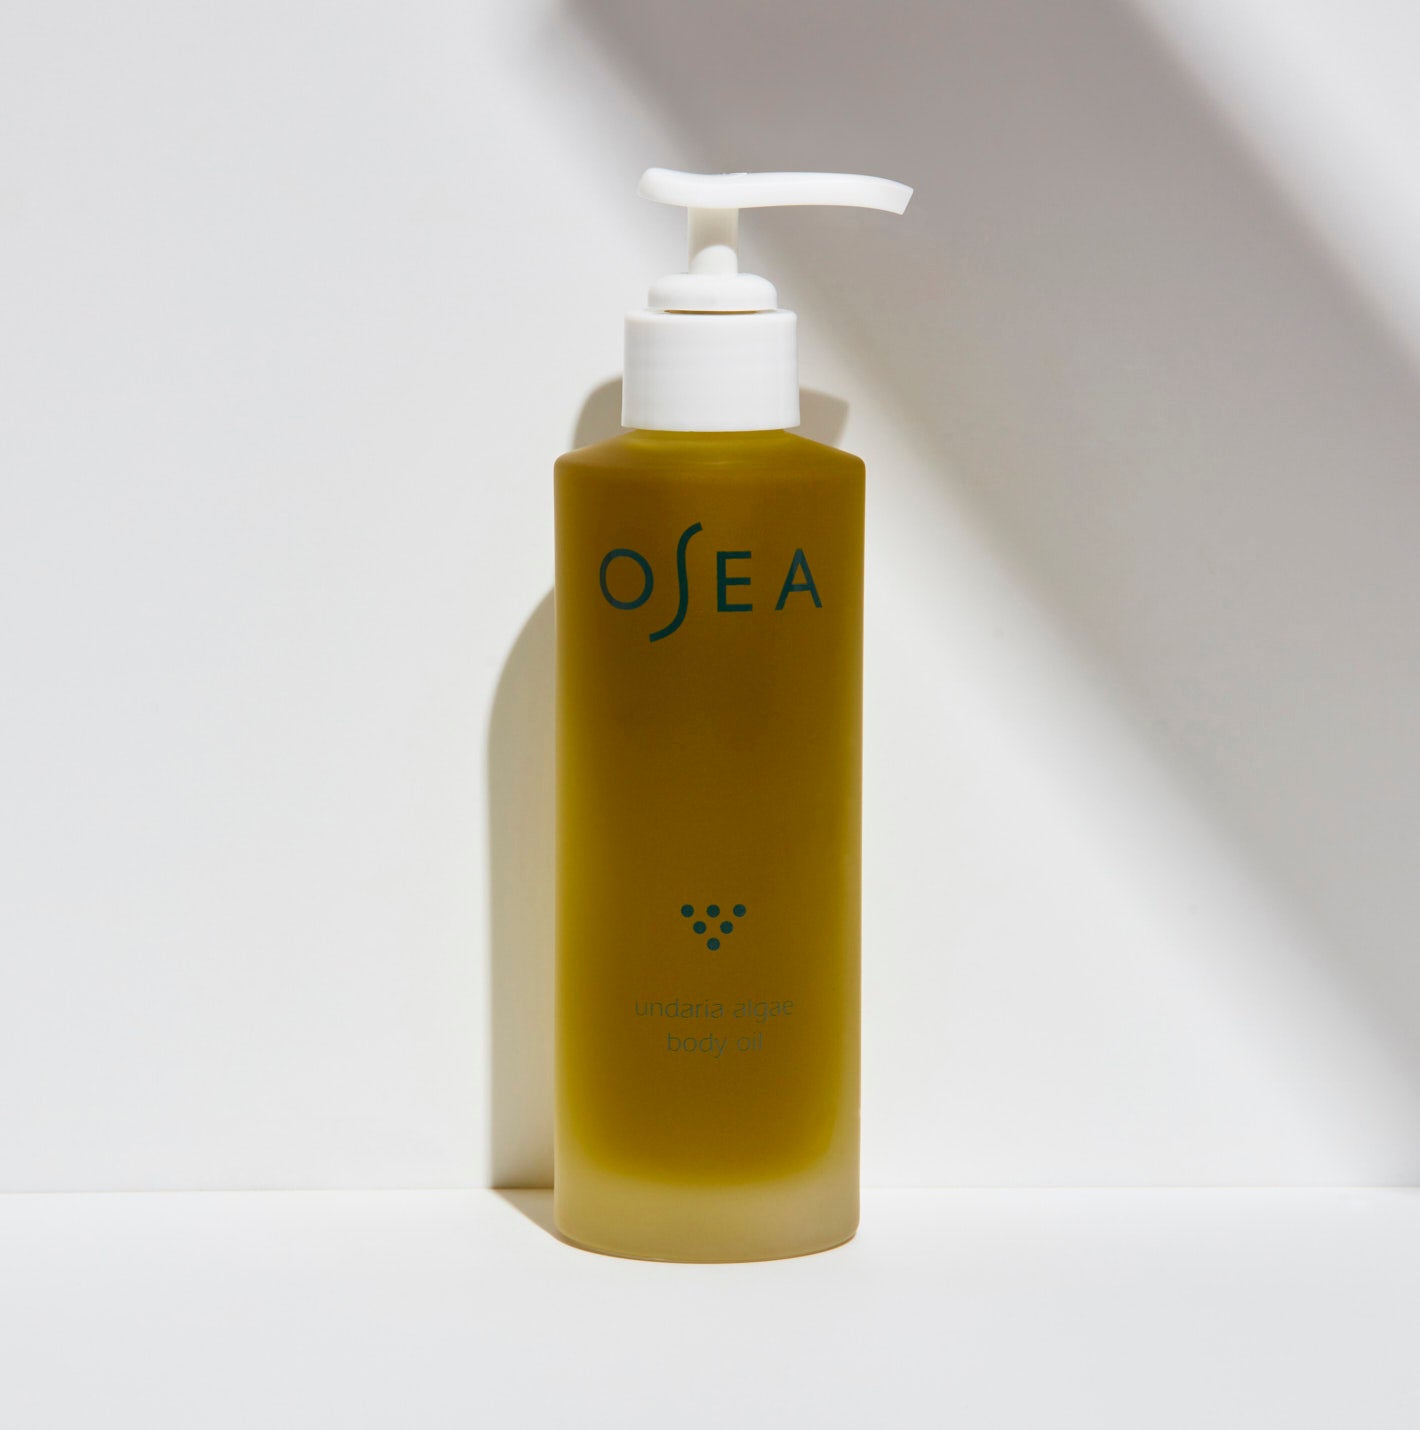 Osea Malibu Undaria Algae Body Oil | Heyday